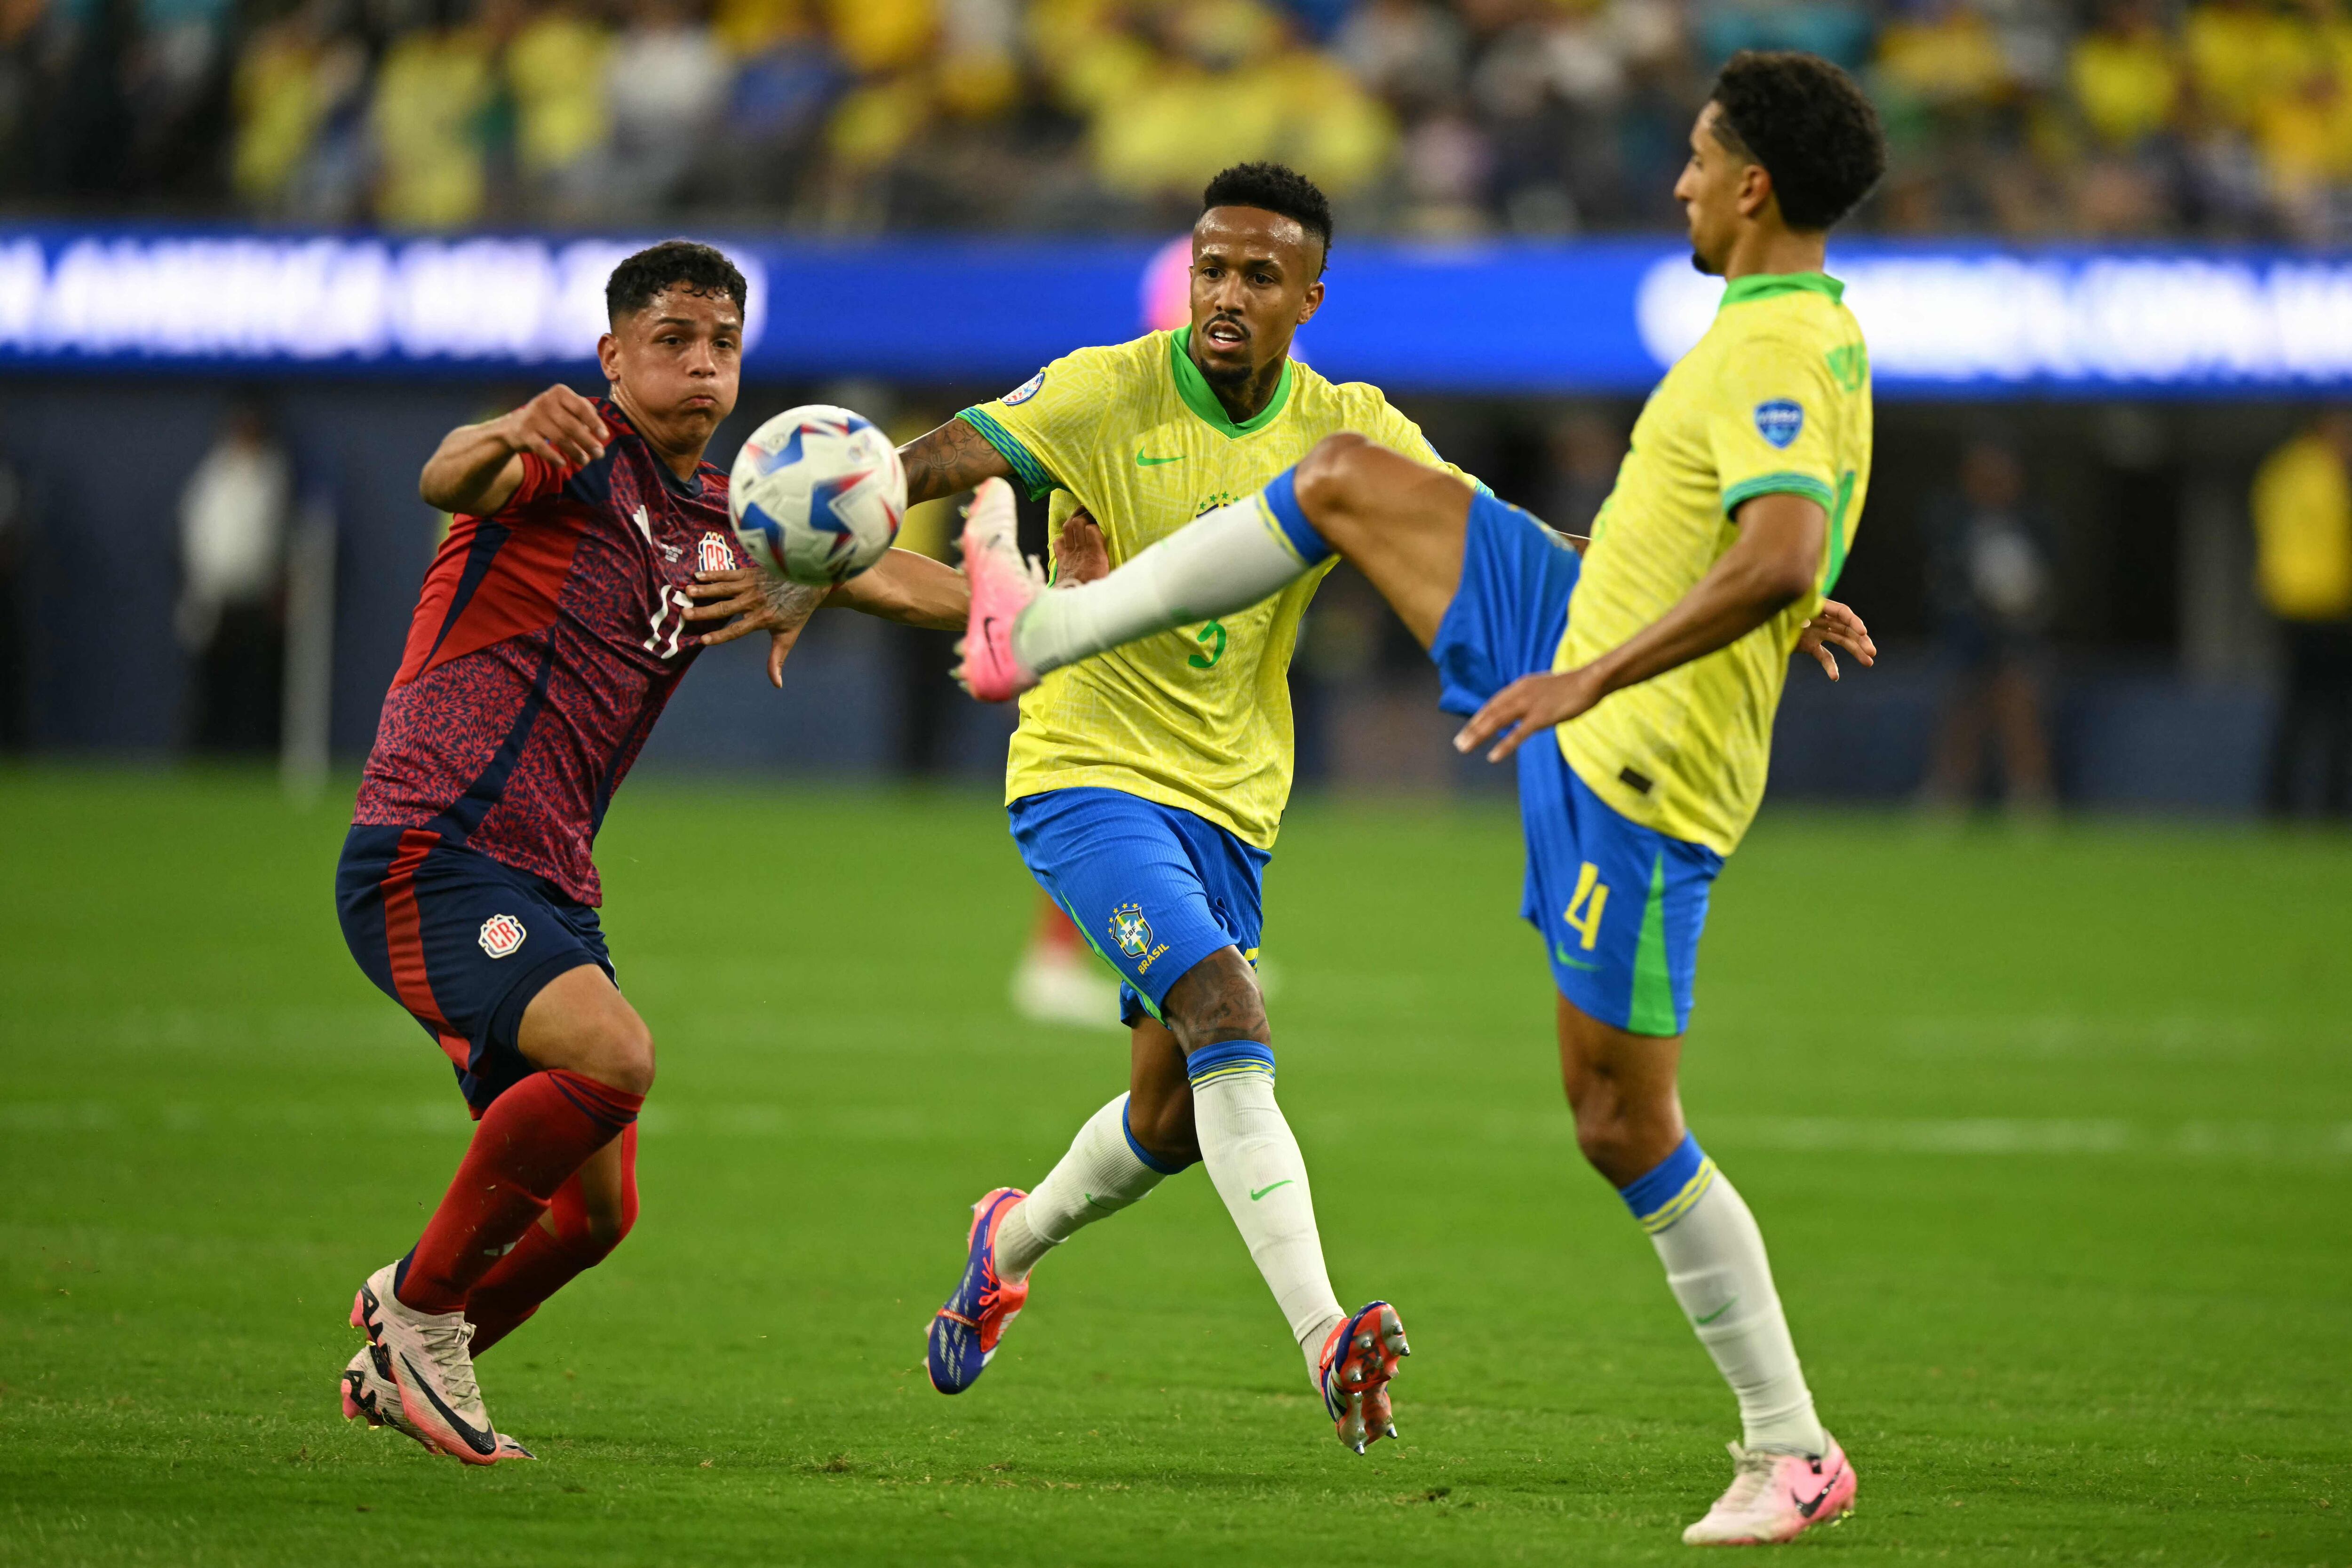 La Selección de Costa Rica dio la sorpresa en la Copa América al empatar sin goles contra Brasil. En la acción, Warren Madrigal se enfrentó a Eder Militao y a Marquinhos, defensas de Brasil.